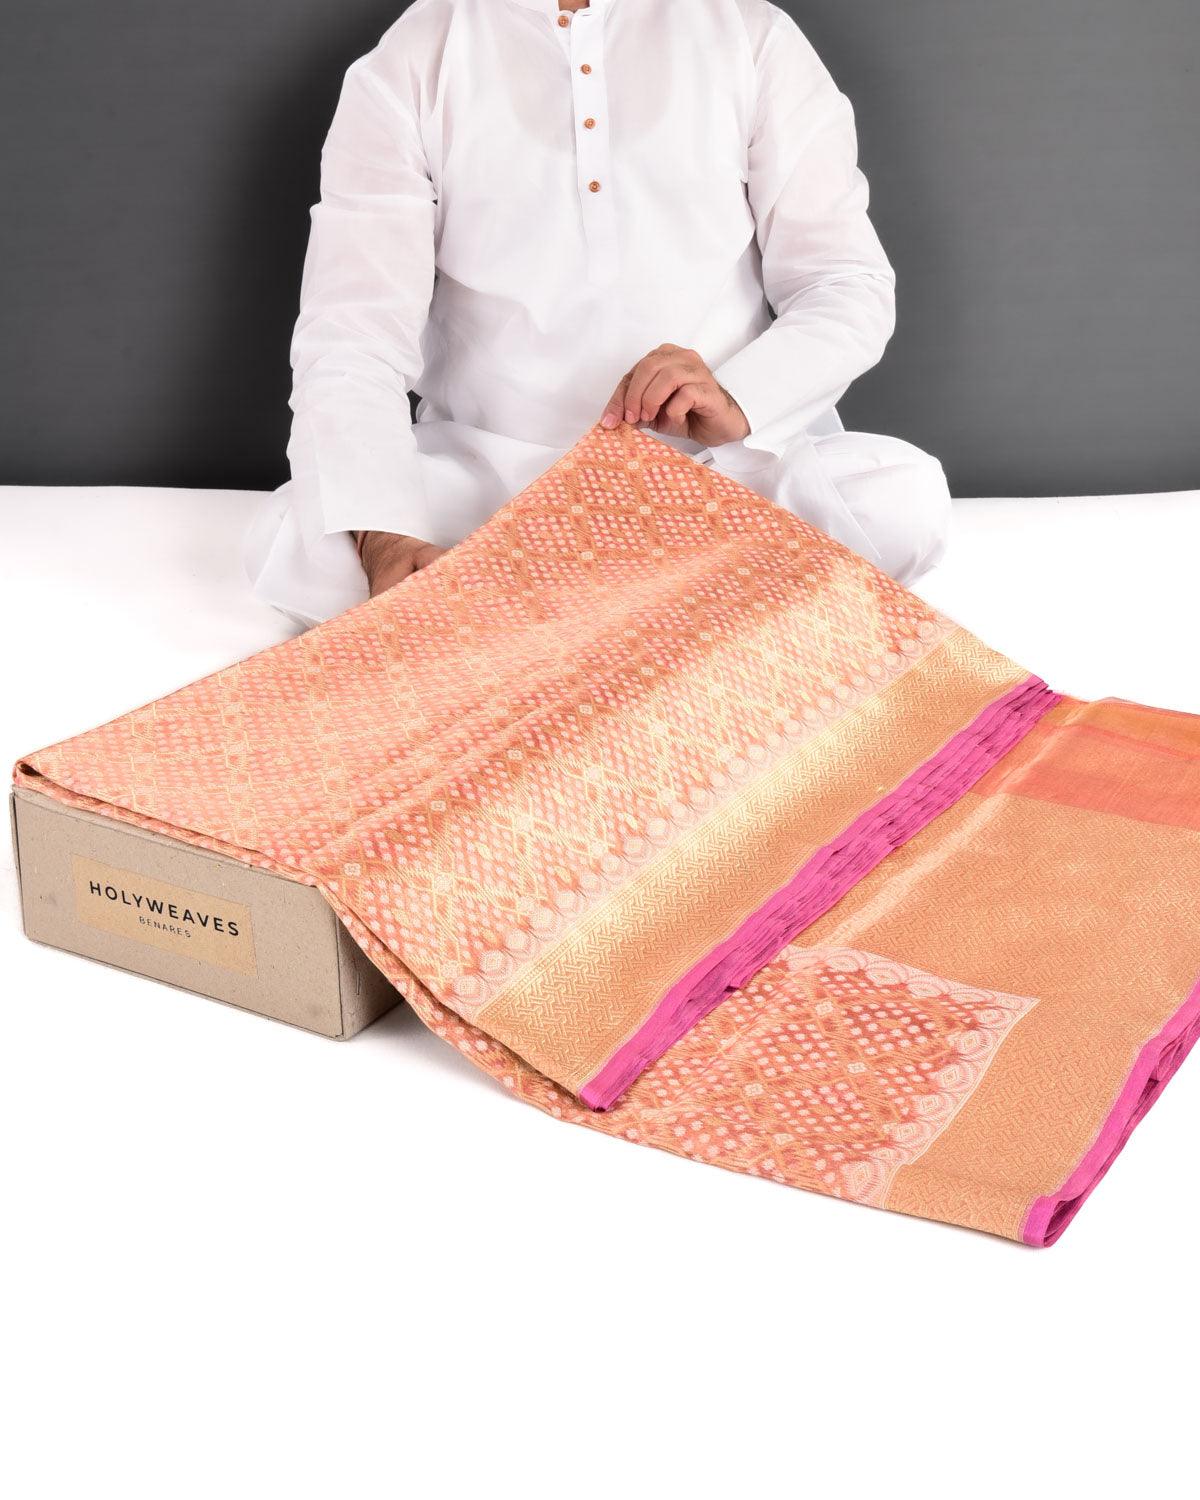 Metallic Pink Banarasi Resham & Gold Zari Gharchola Cutwork Brocade Handwoven Kora Tissue Saree - By HolyWeaves, Benares